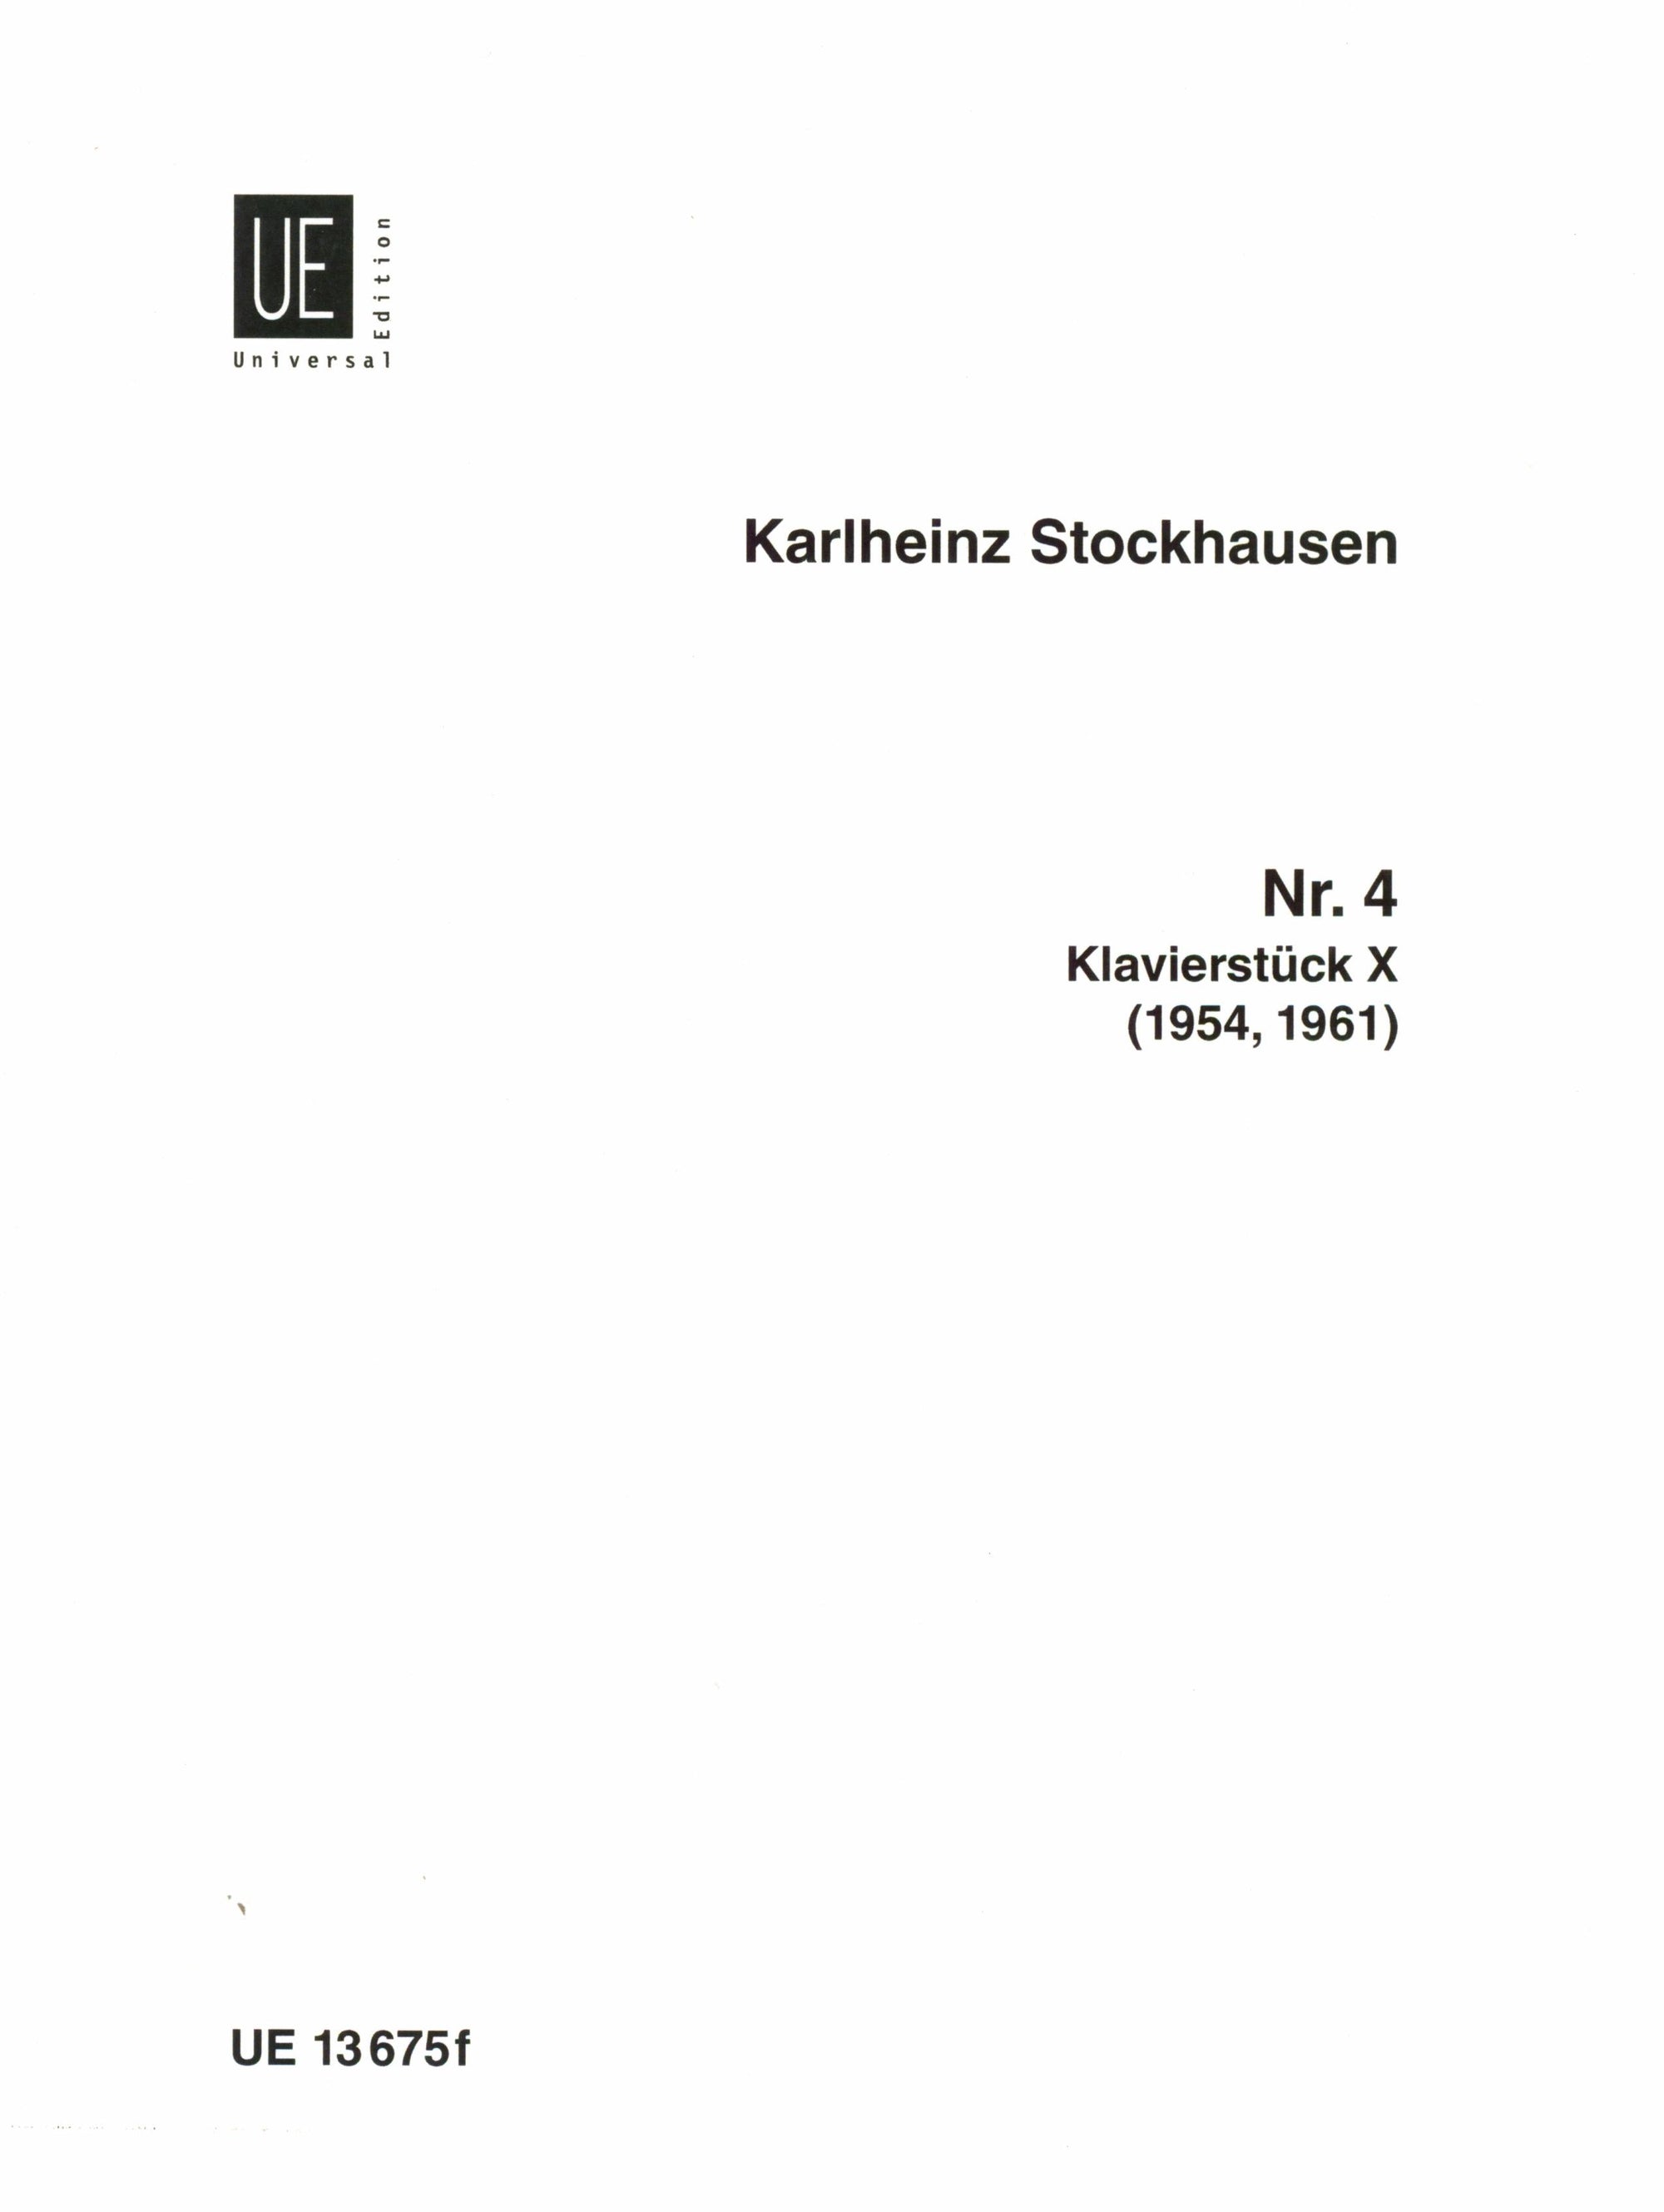 Stockhausen: Klavierstück X